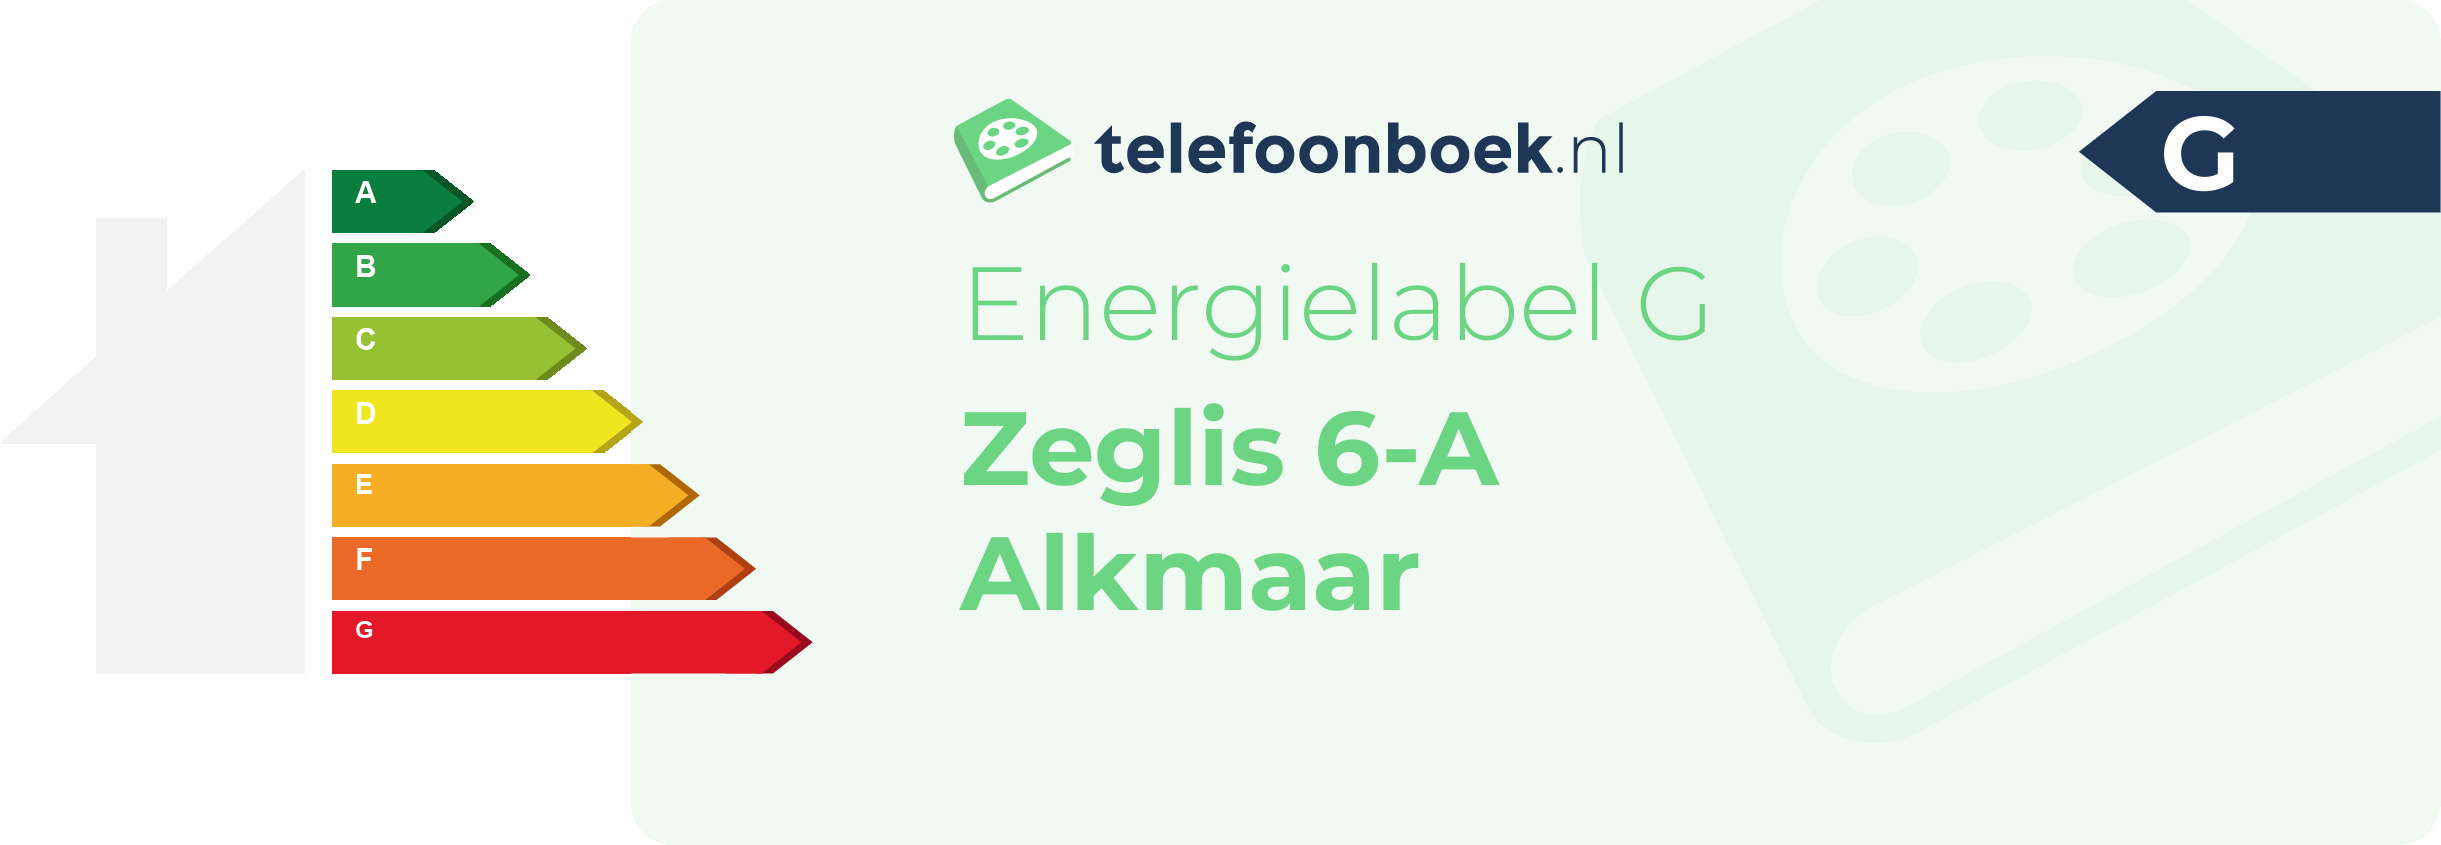 Energielabel Zeglis 6-A Alkmaar